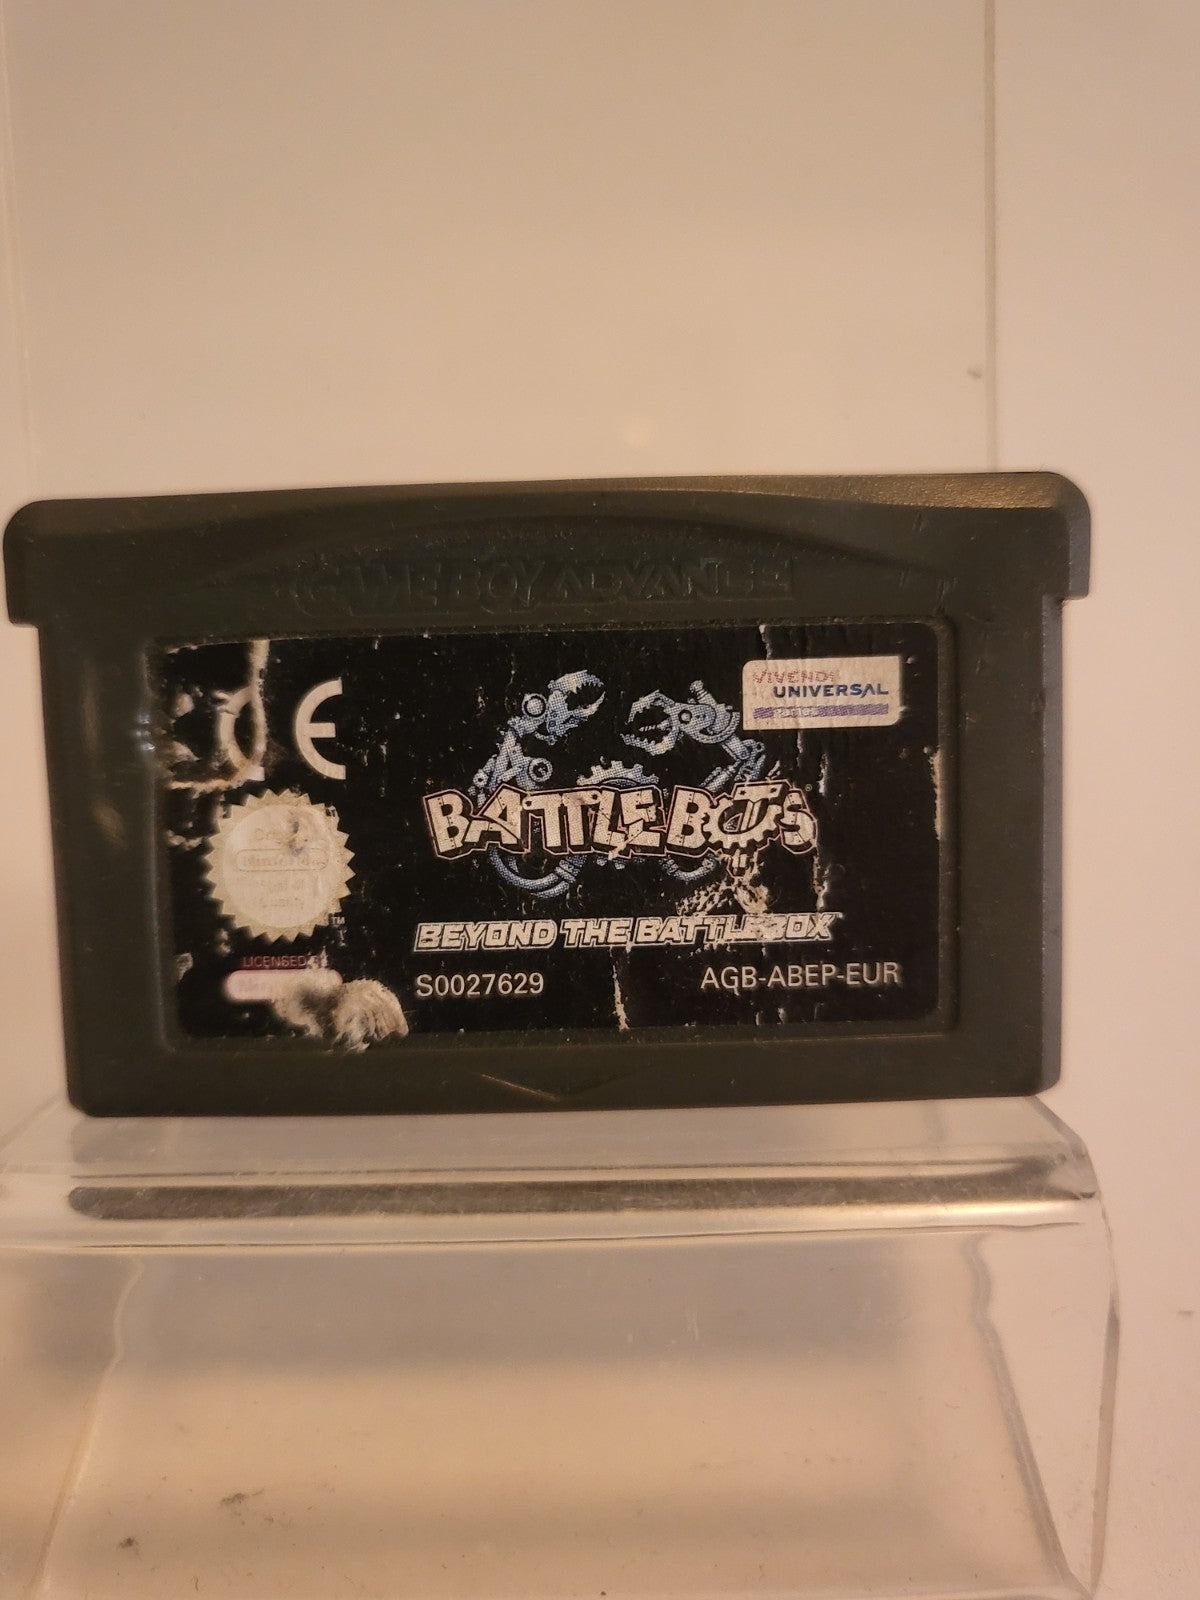 Battle Bots Beyond the Battle Game Boy Advance